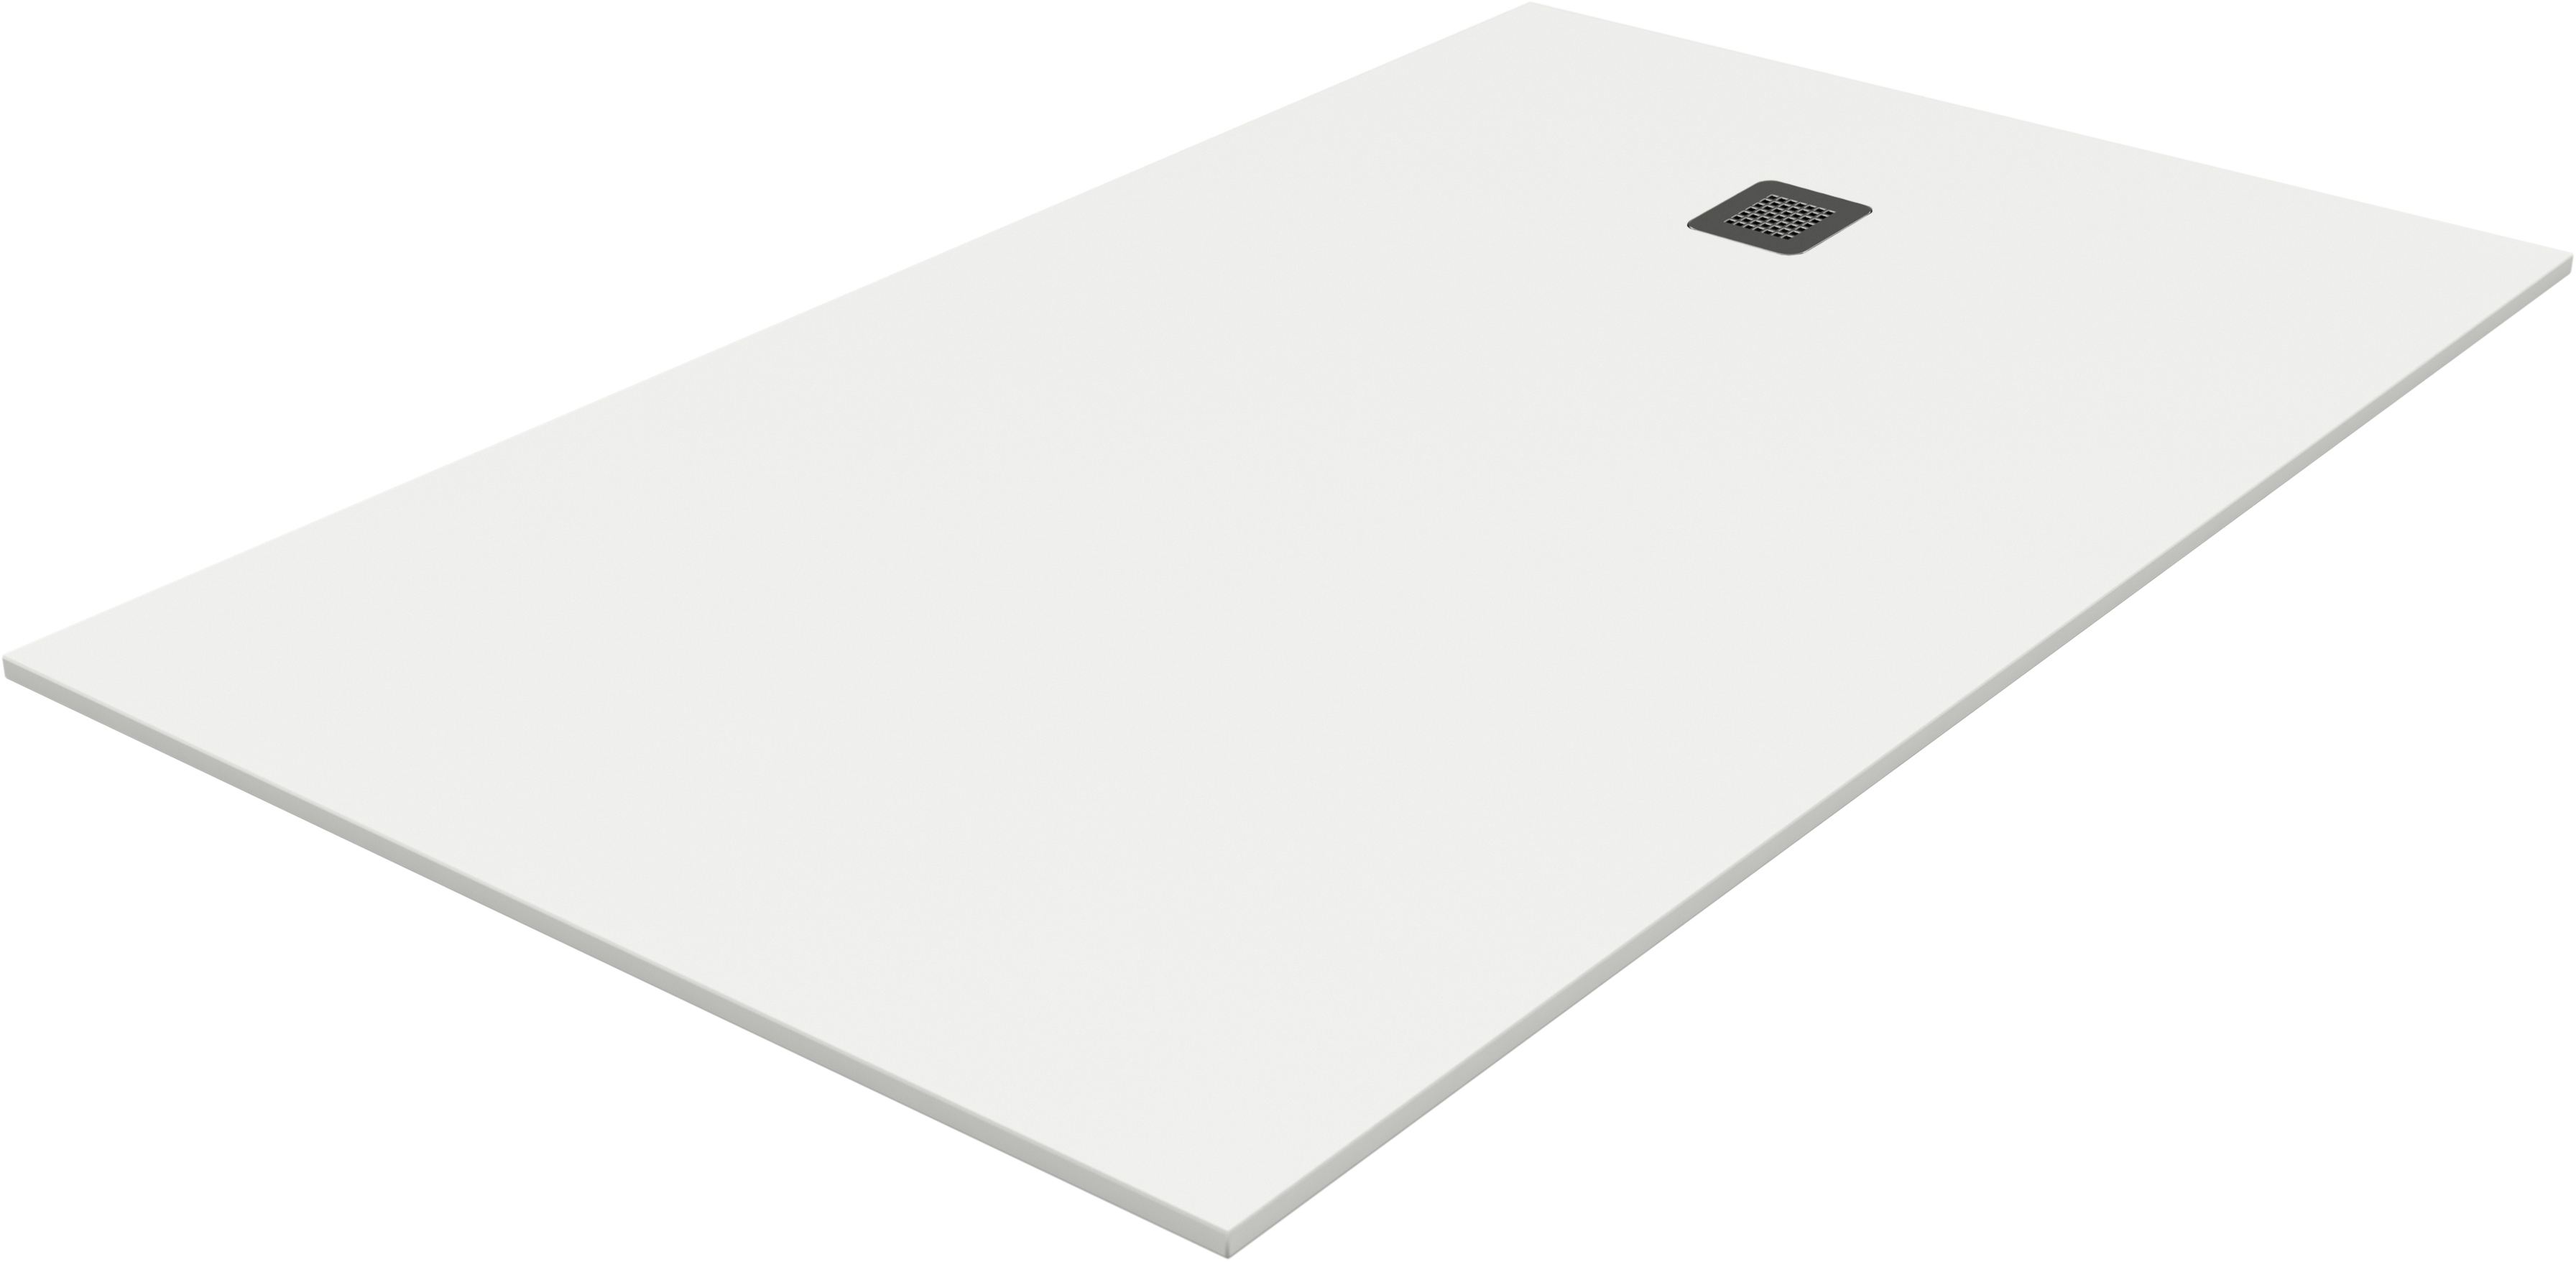 Plato de ducha pietra 160x80 cm blanco